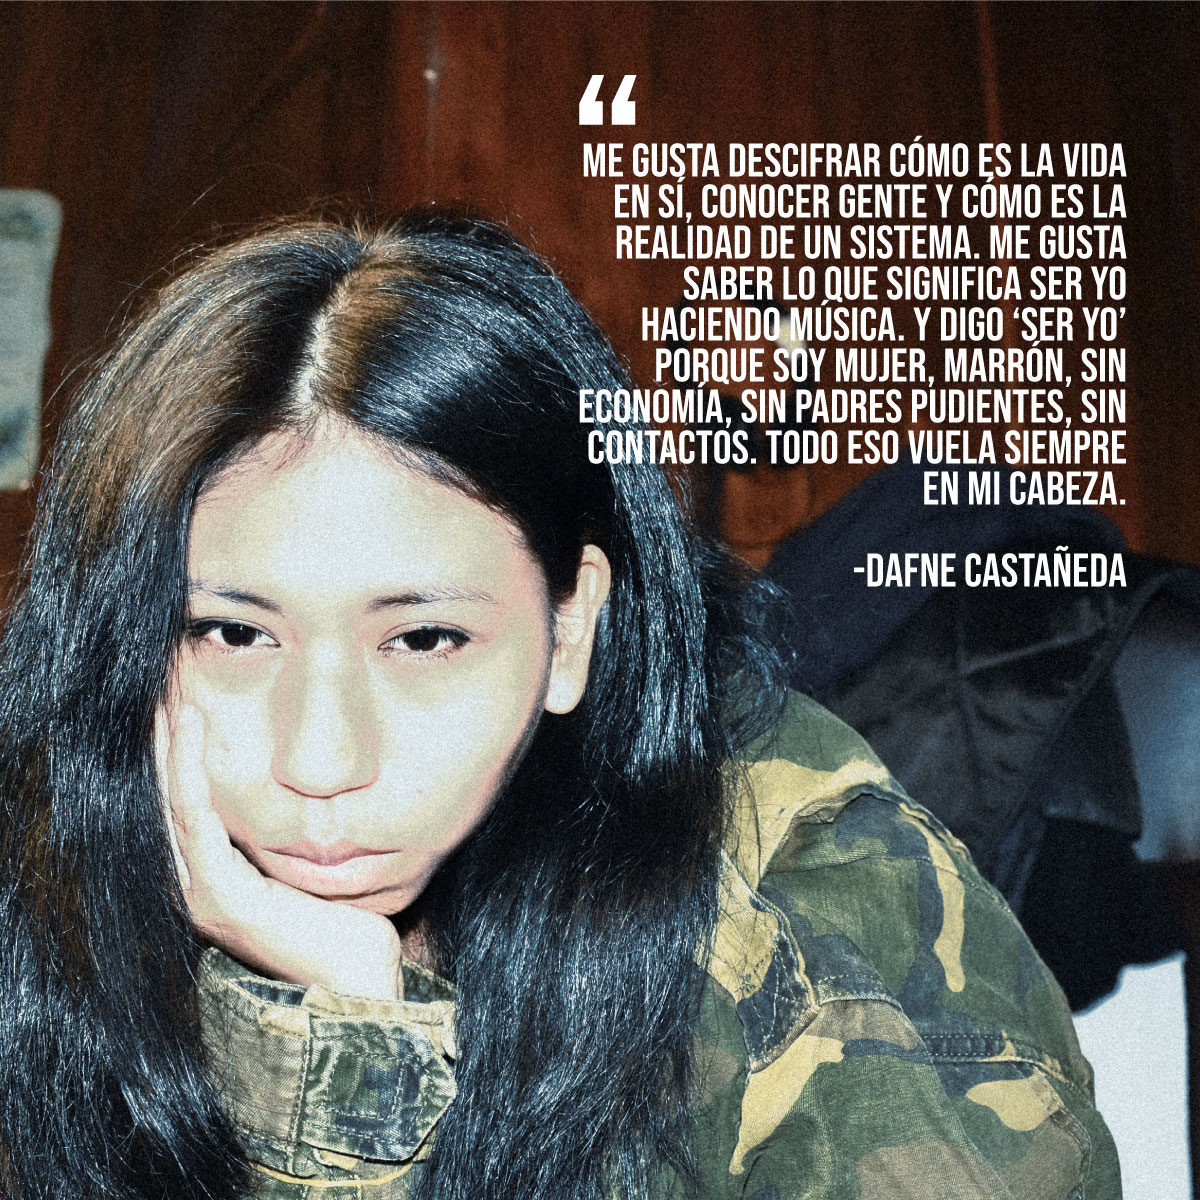 En respaldo a las luchas colectivas de las mujeres, los derechos conquistados y los que faltan conquistar, este #8M te invitamos a oír las voces de estas increíbles artistas peruanas. #DiaDeLaMujer #MúsicaPeruana #PeriodismoMusical